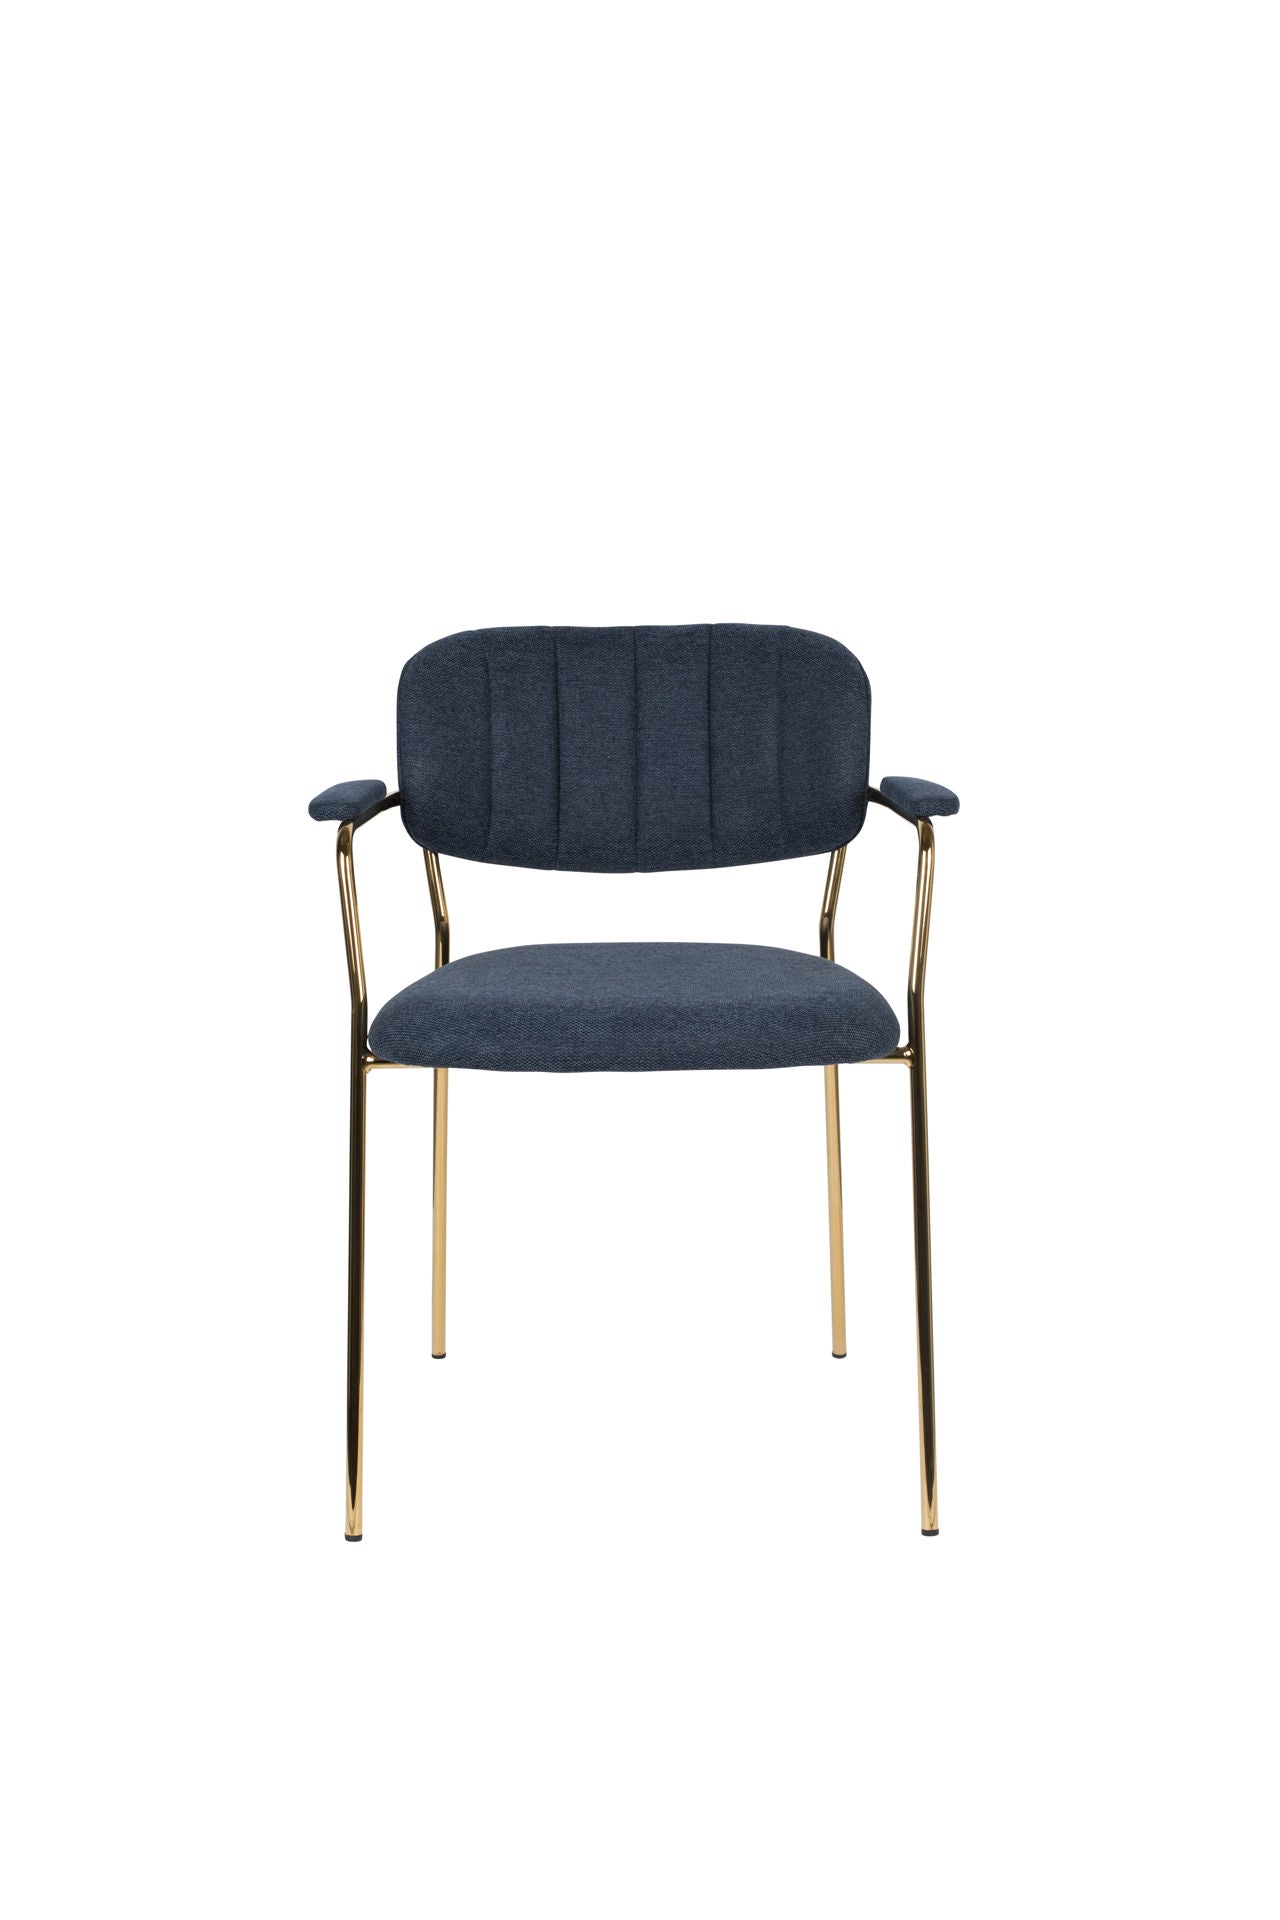 Nancy's Succasunna Chair - Rétro - Or, Bleu foncé - Polyester, Contreplaqué, Acier - 56 cm x 60,5 cm x 78 cm